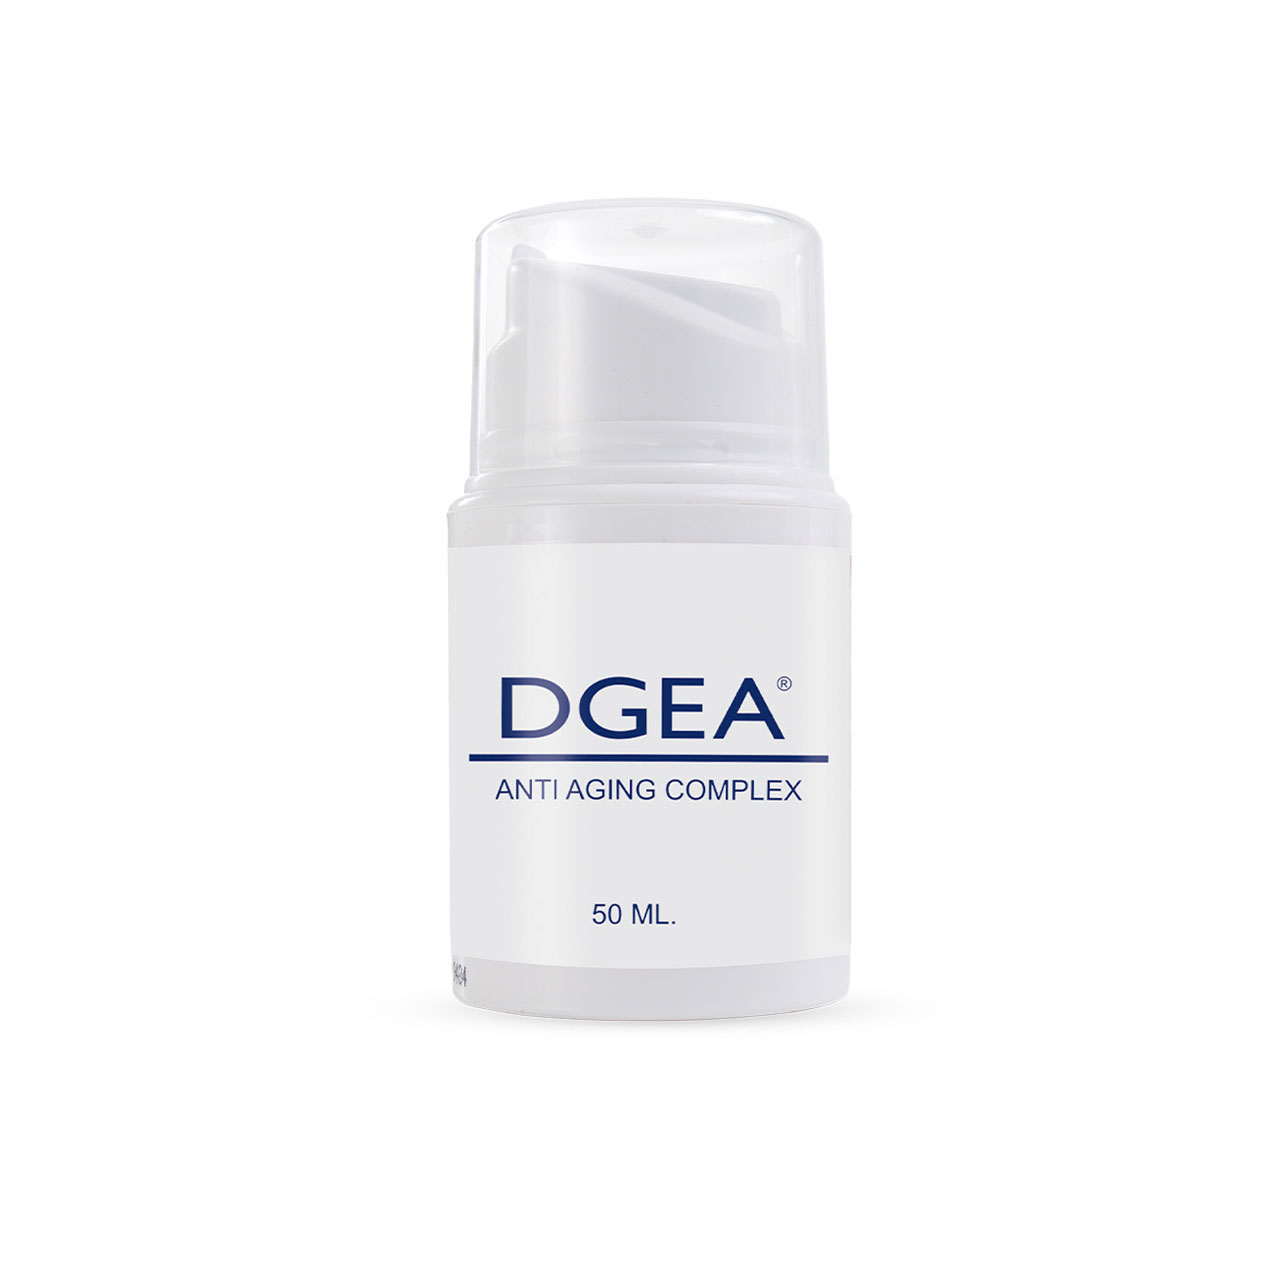 DGEA ® blue - anti aging ansiktskrem for menn 50 ml